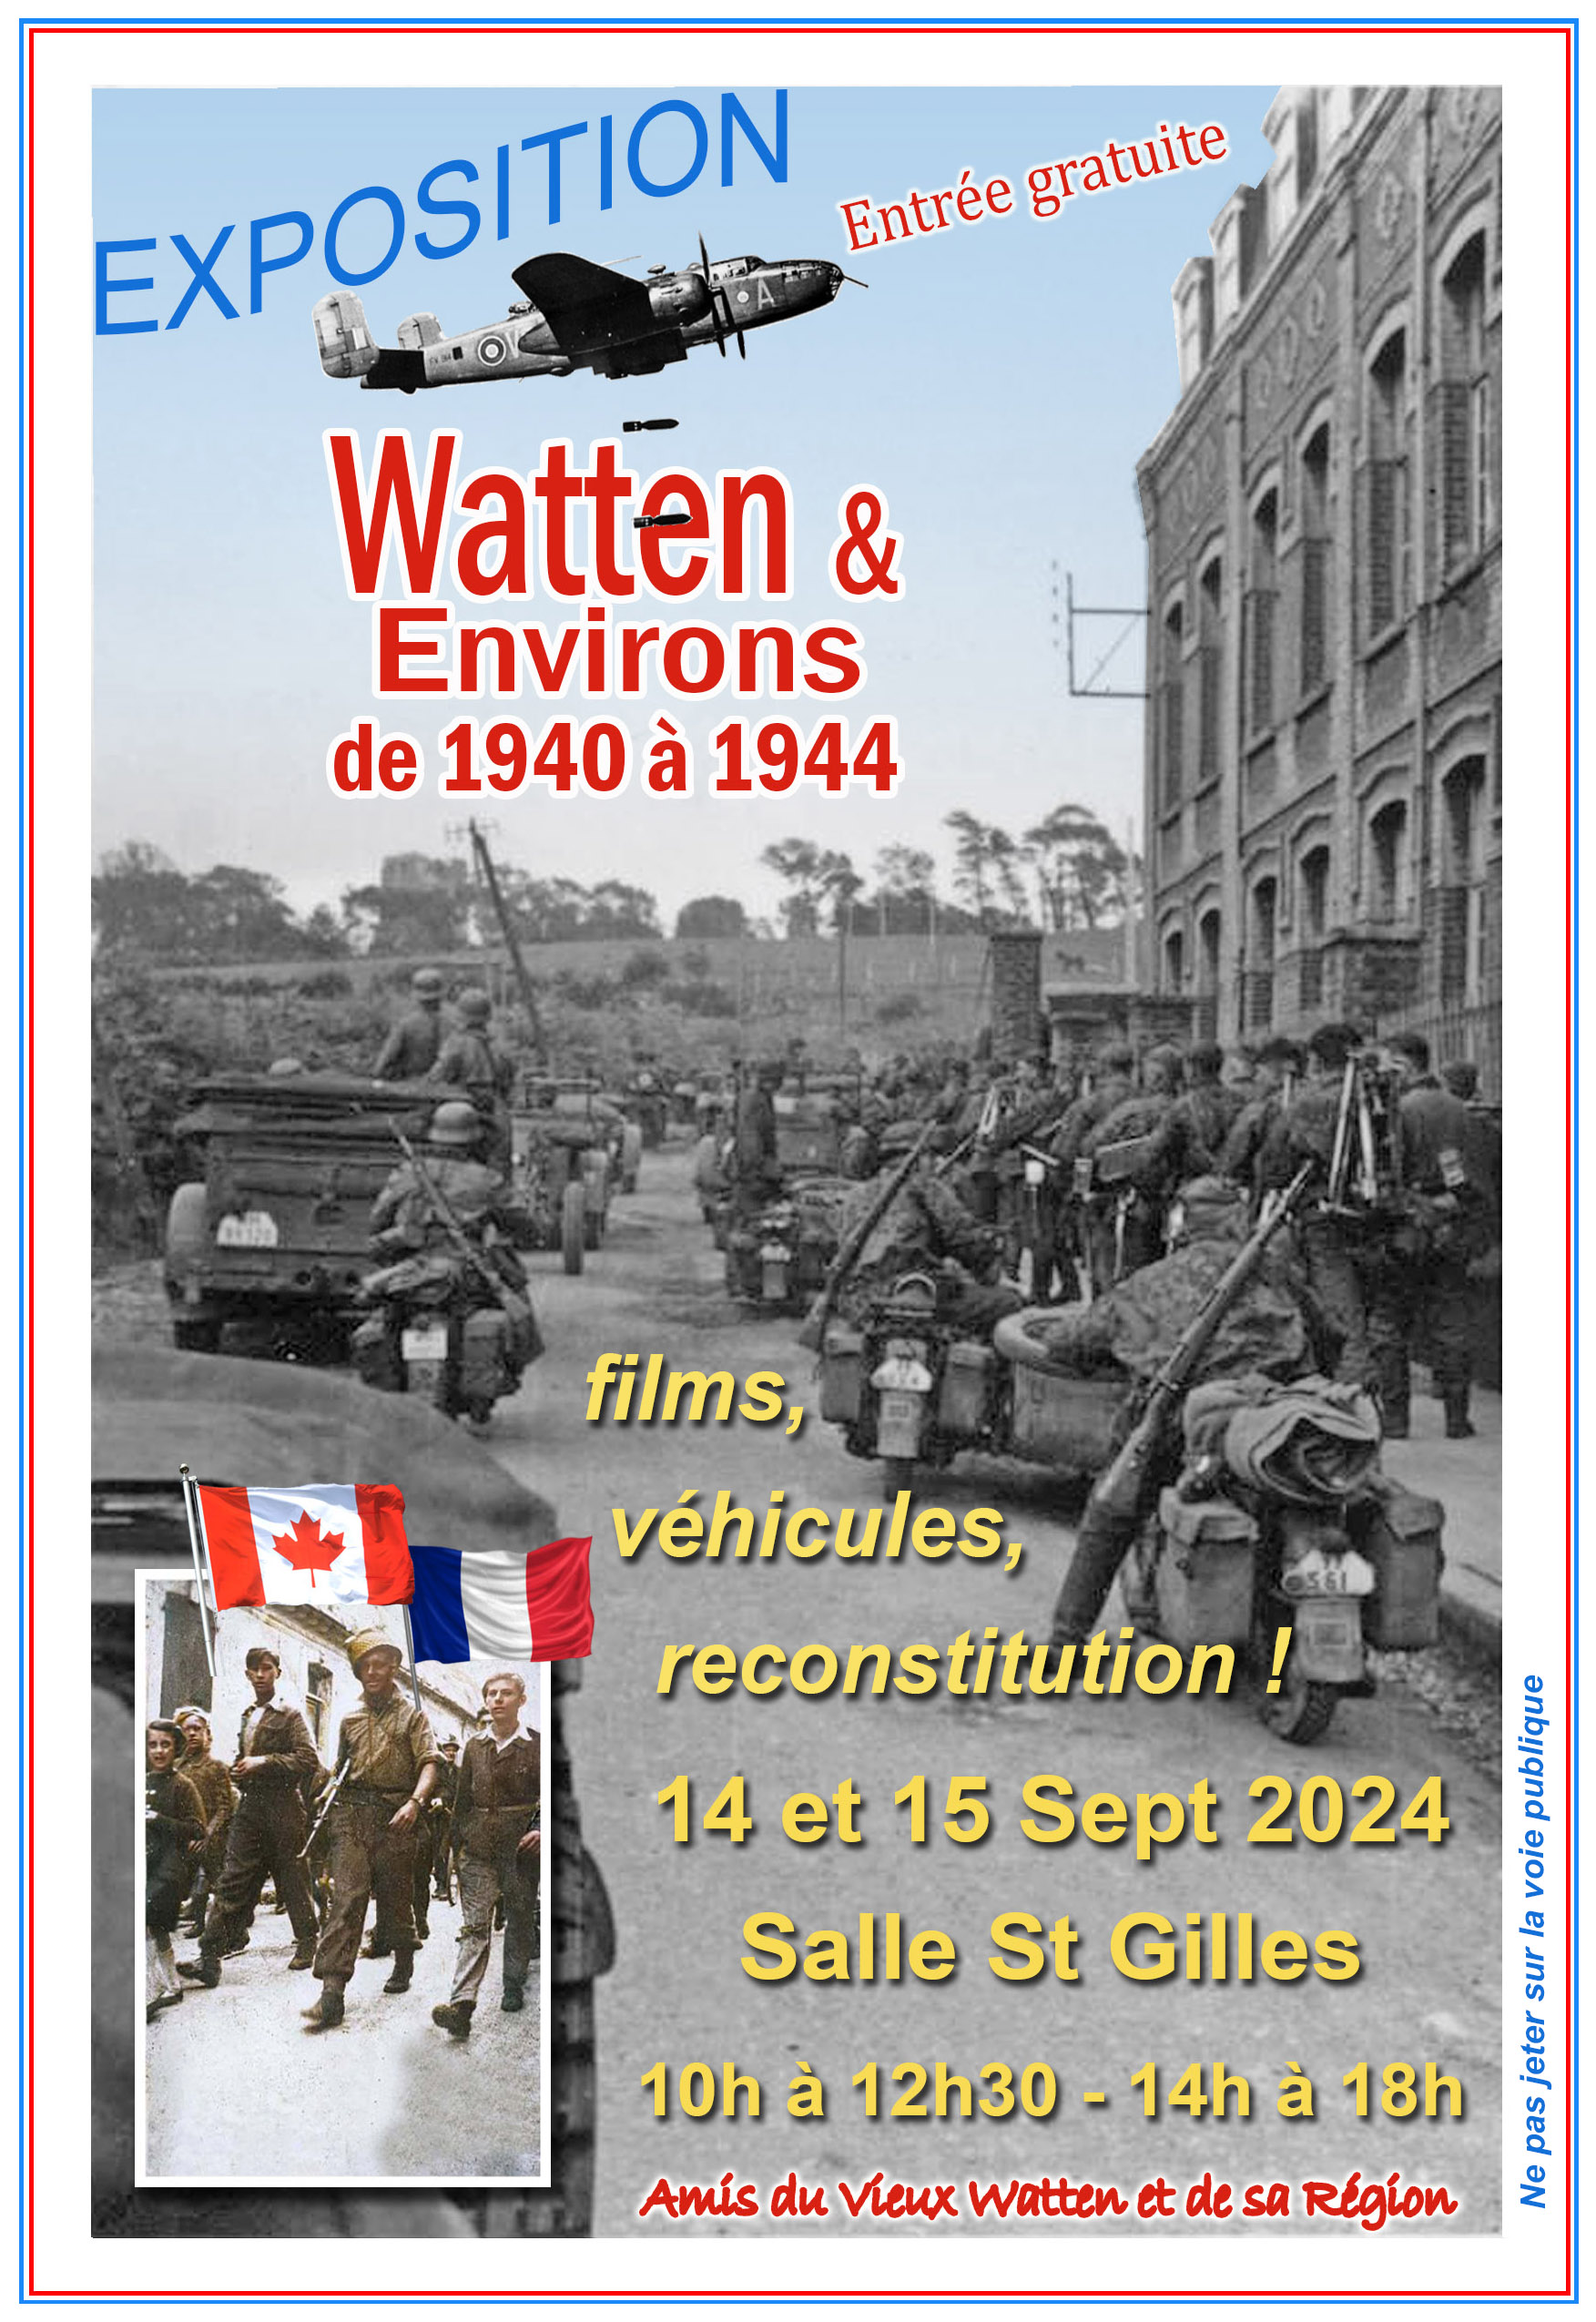 Watten et environs: exposition « L’invasion allemande de mai 1940 à la libération de septembre 1944 »